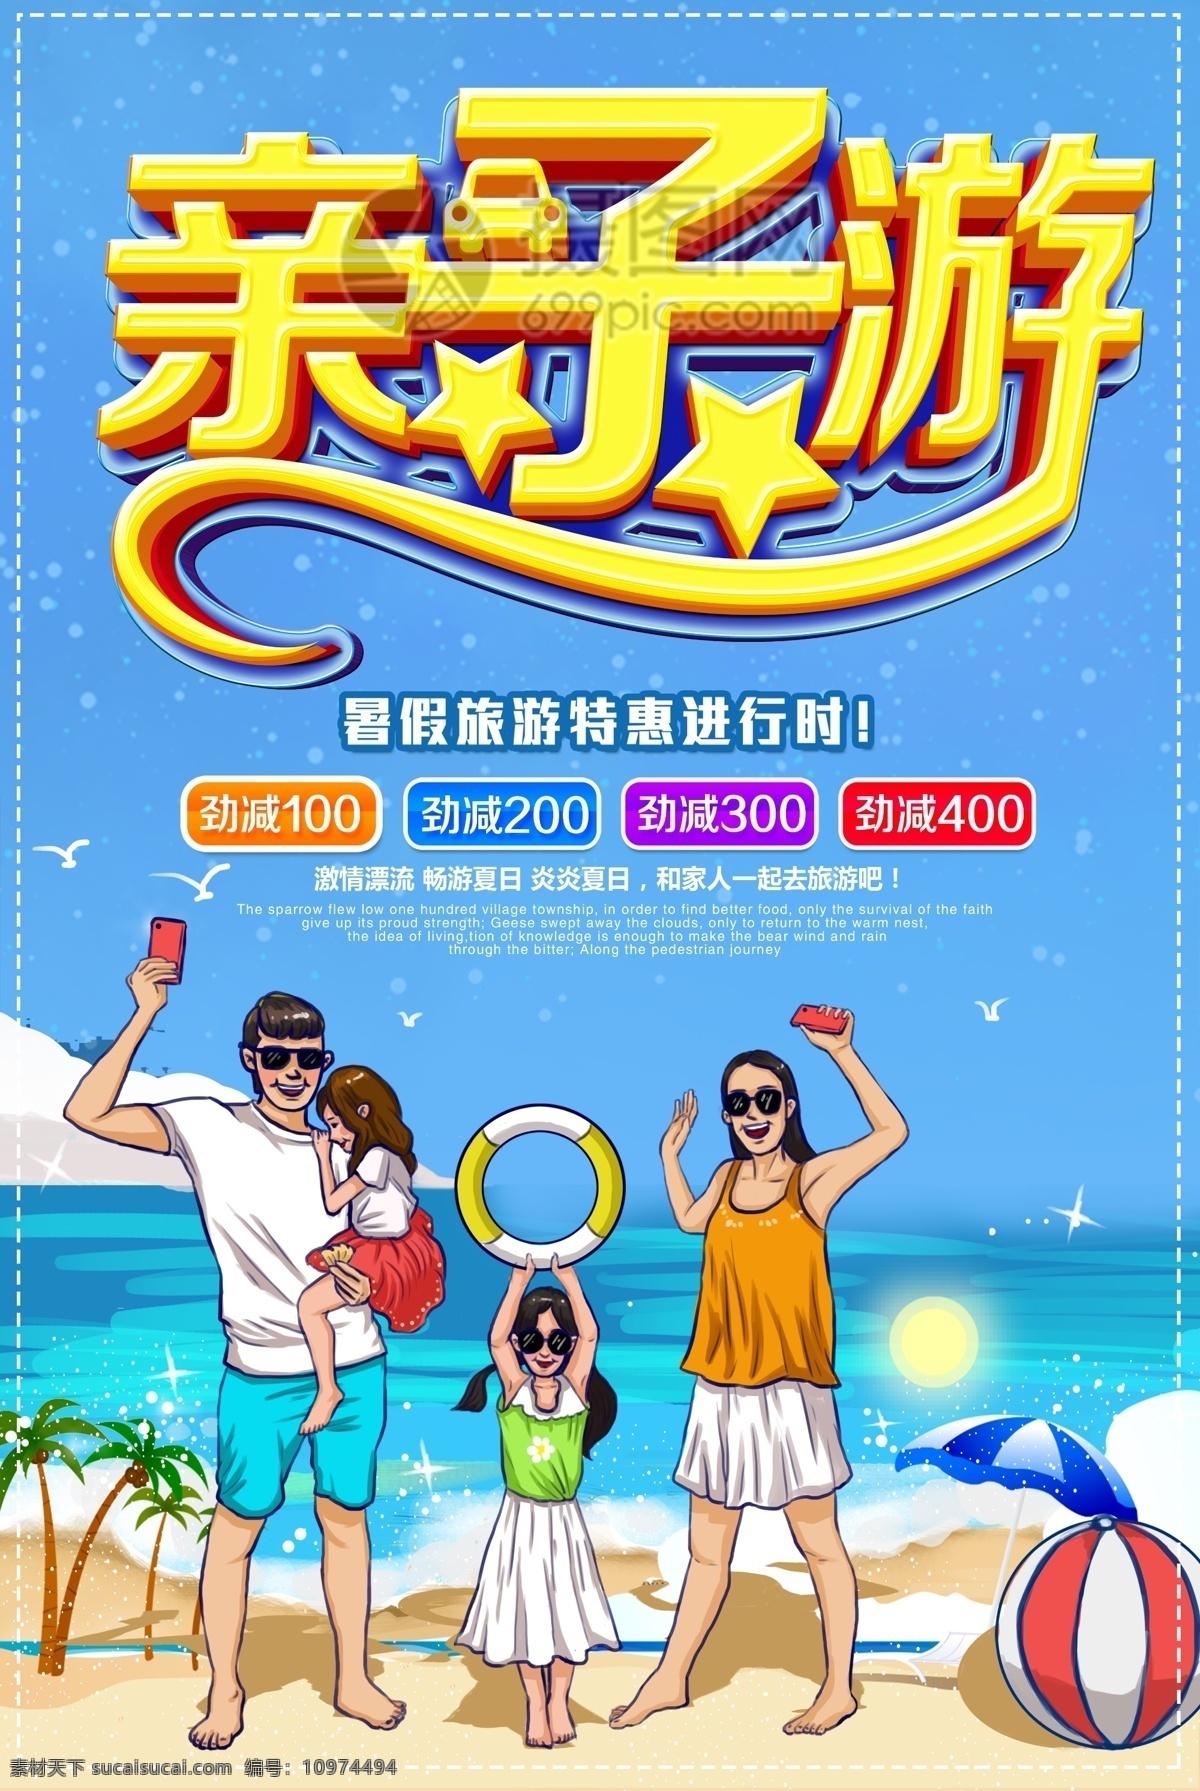 暑期 亲子 游 海报 暑期亲子游 旅行 亲子游 一家三口 旅游 夏季旅游 旅游促销 家人 一起 夏季旅游促销